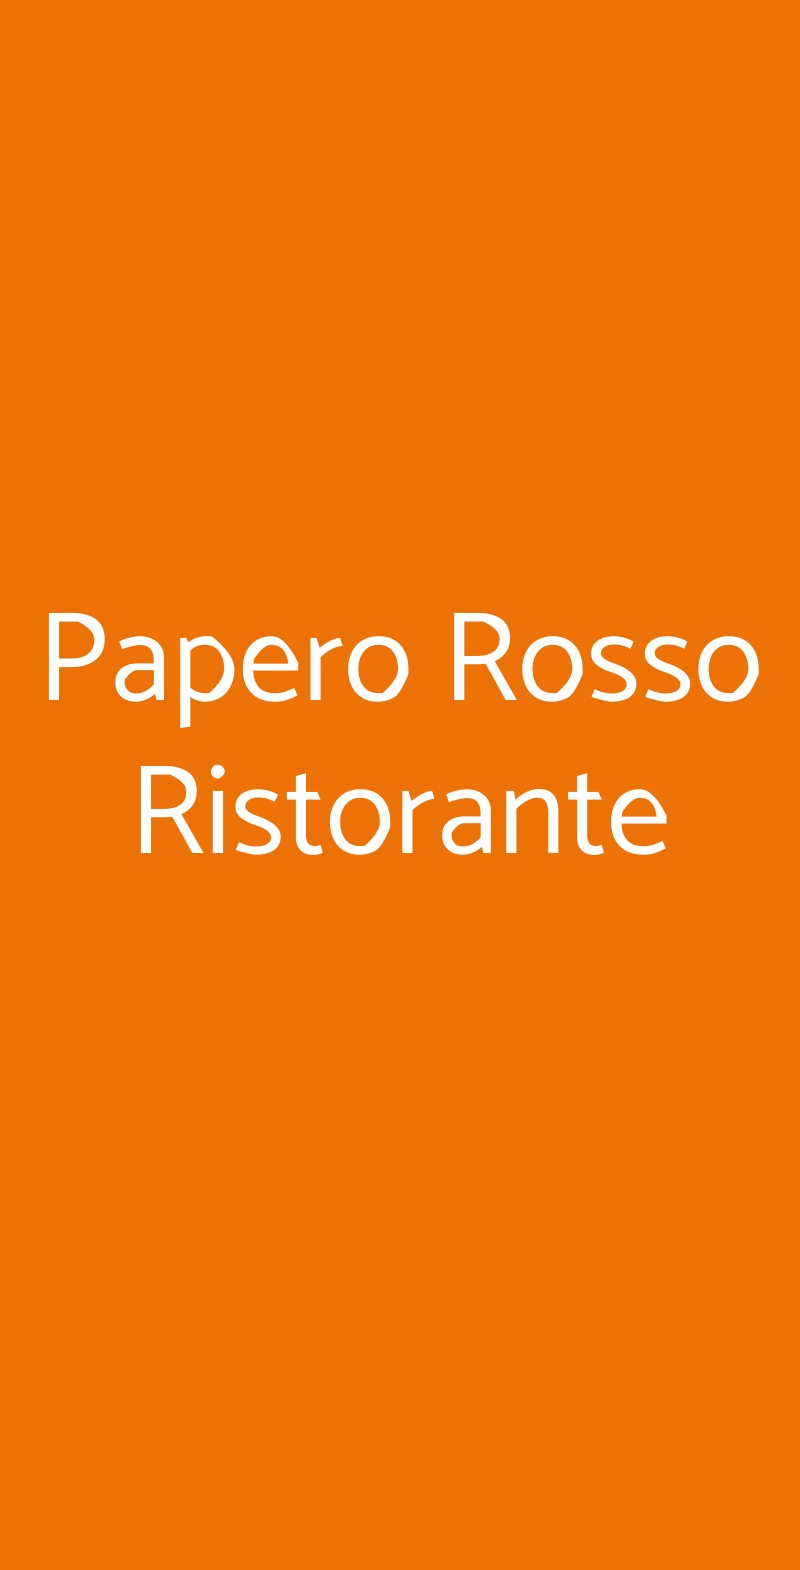 Papero Rosso Ristorante Firenze menù 1 pagina